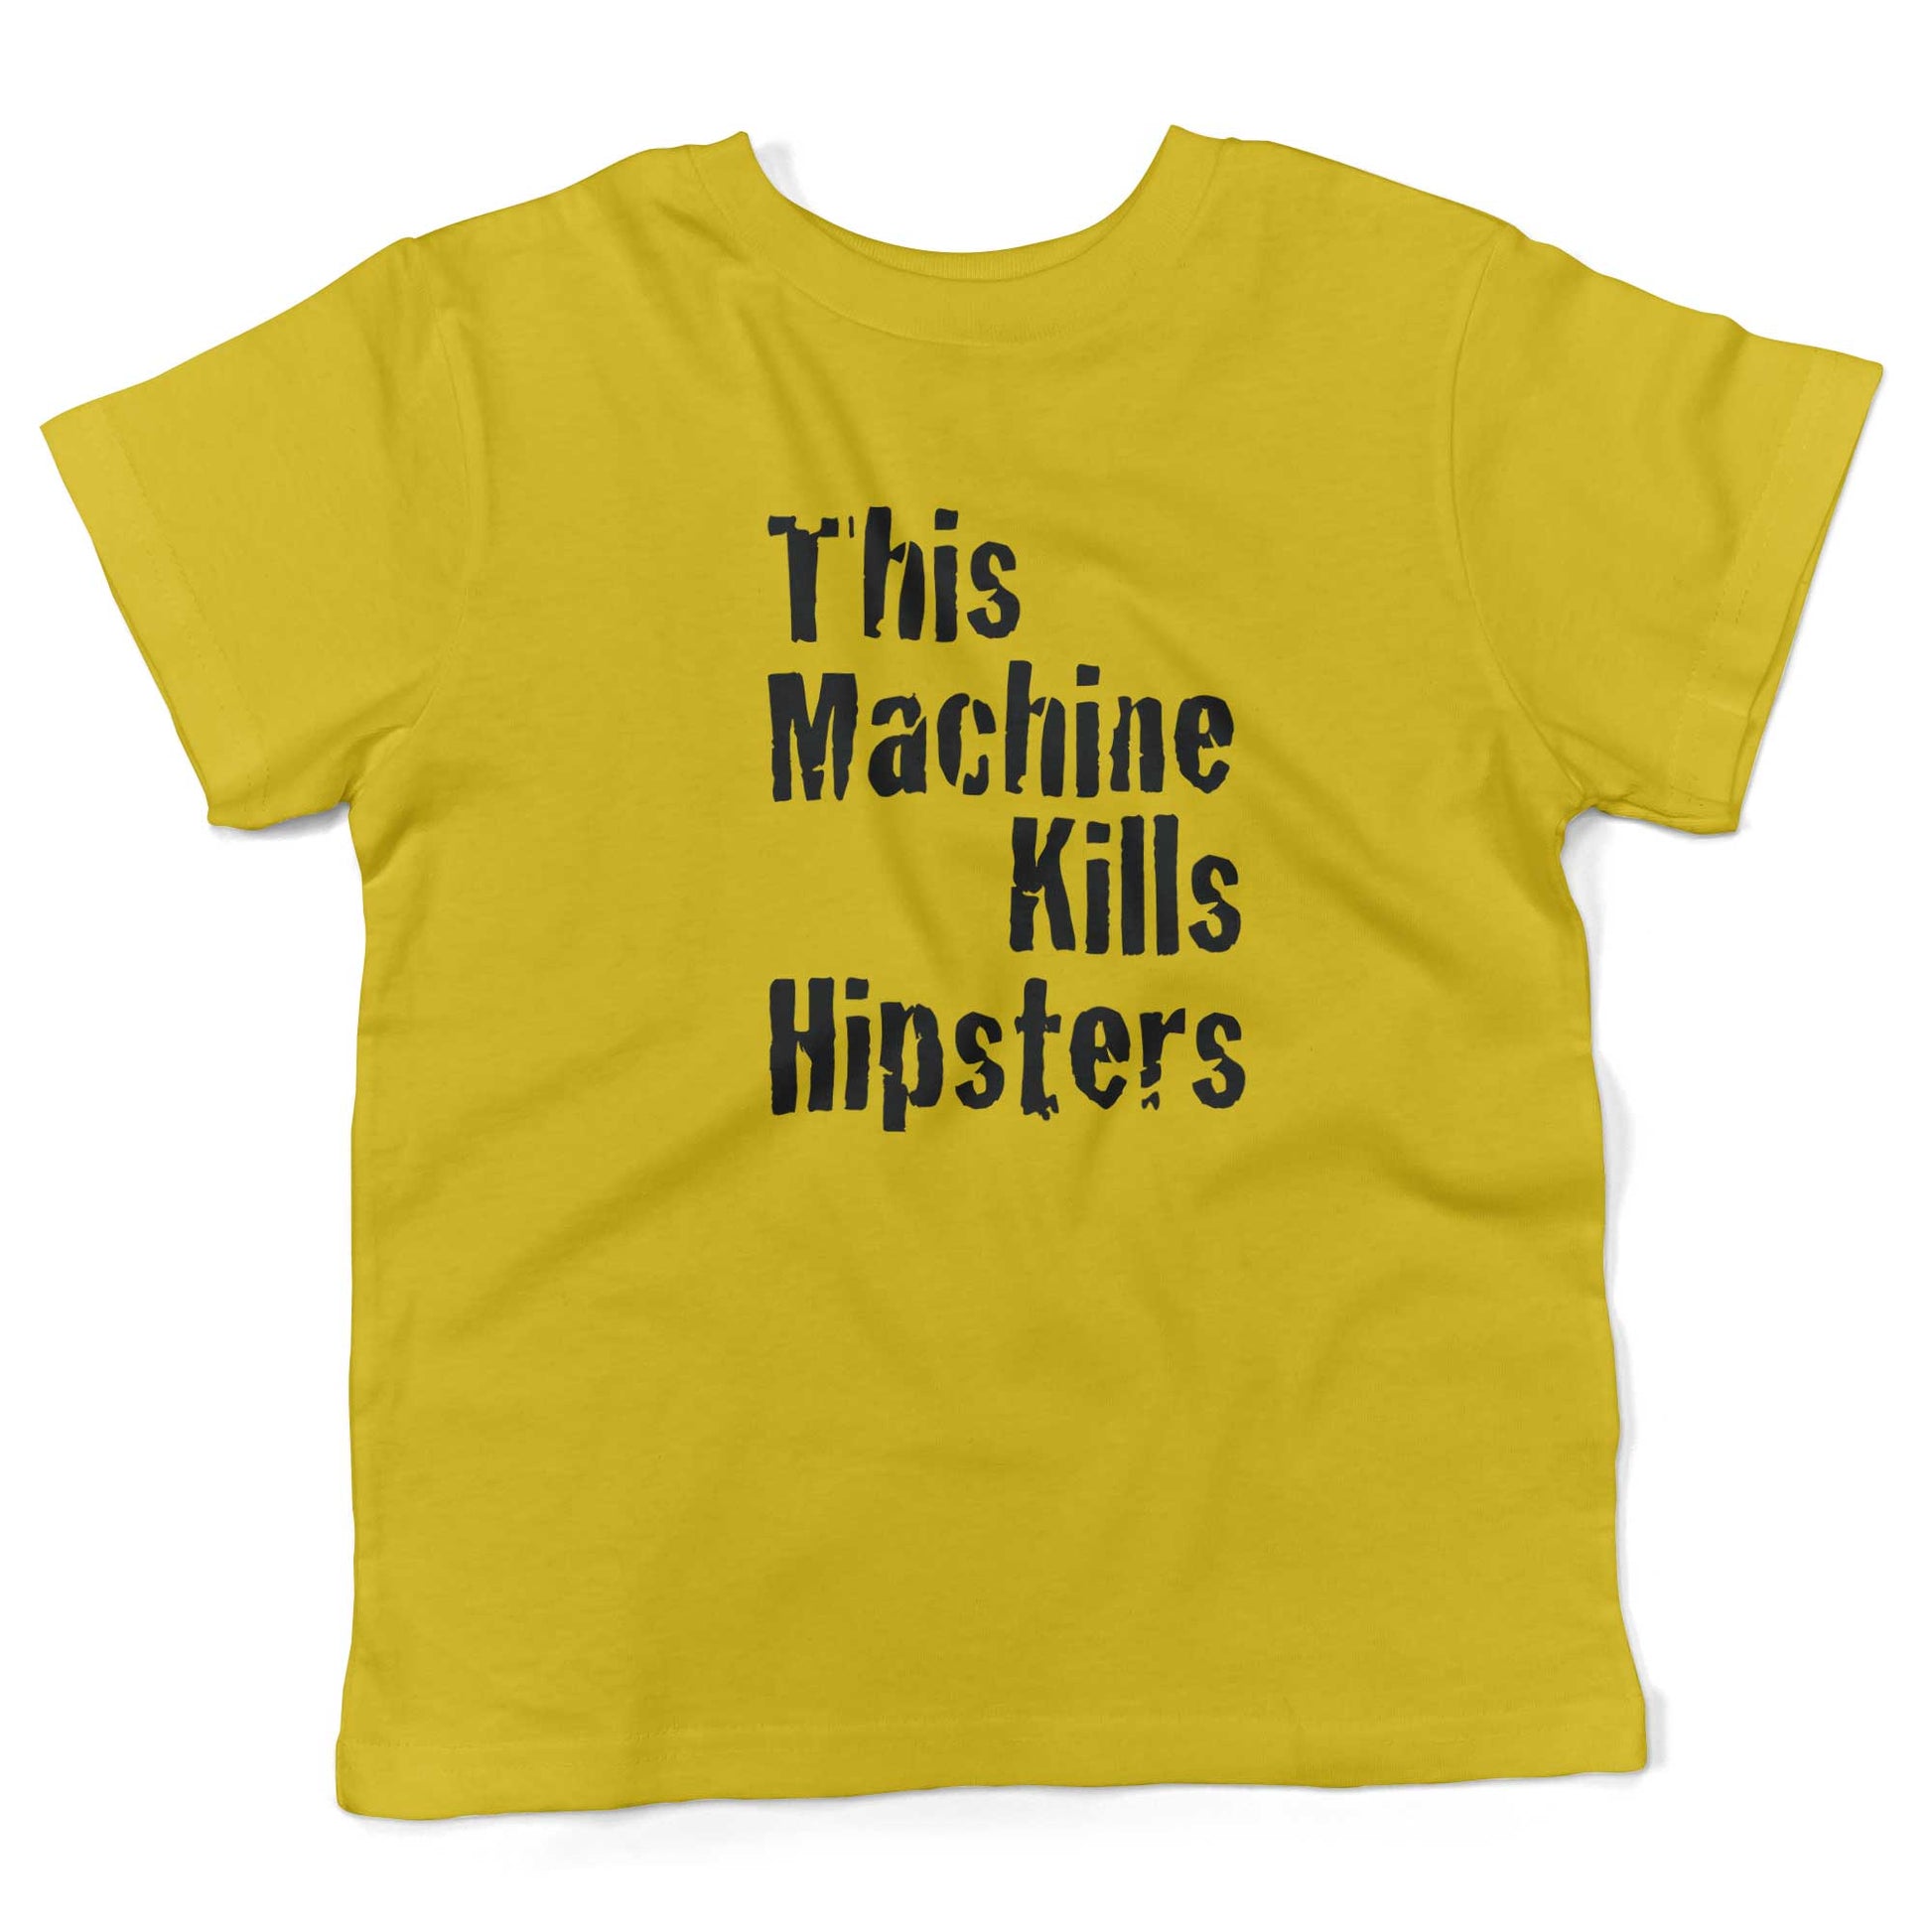 This Machine Kills Hipsters Toddler Shirt-Sunshine Yellow-2T